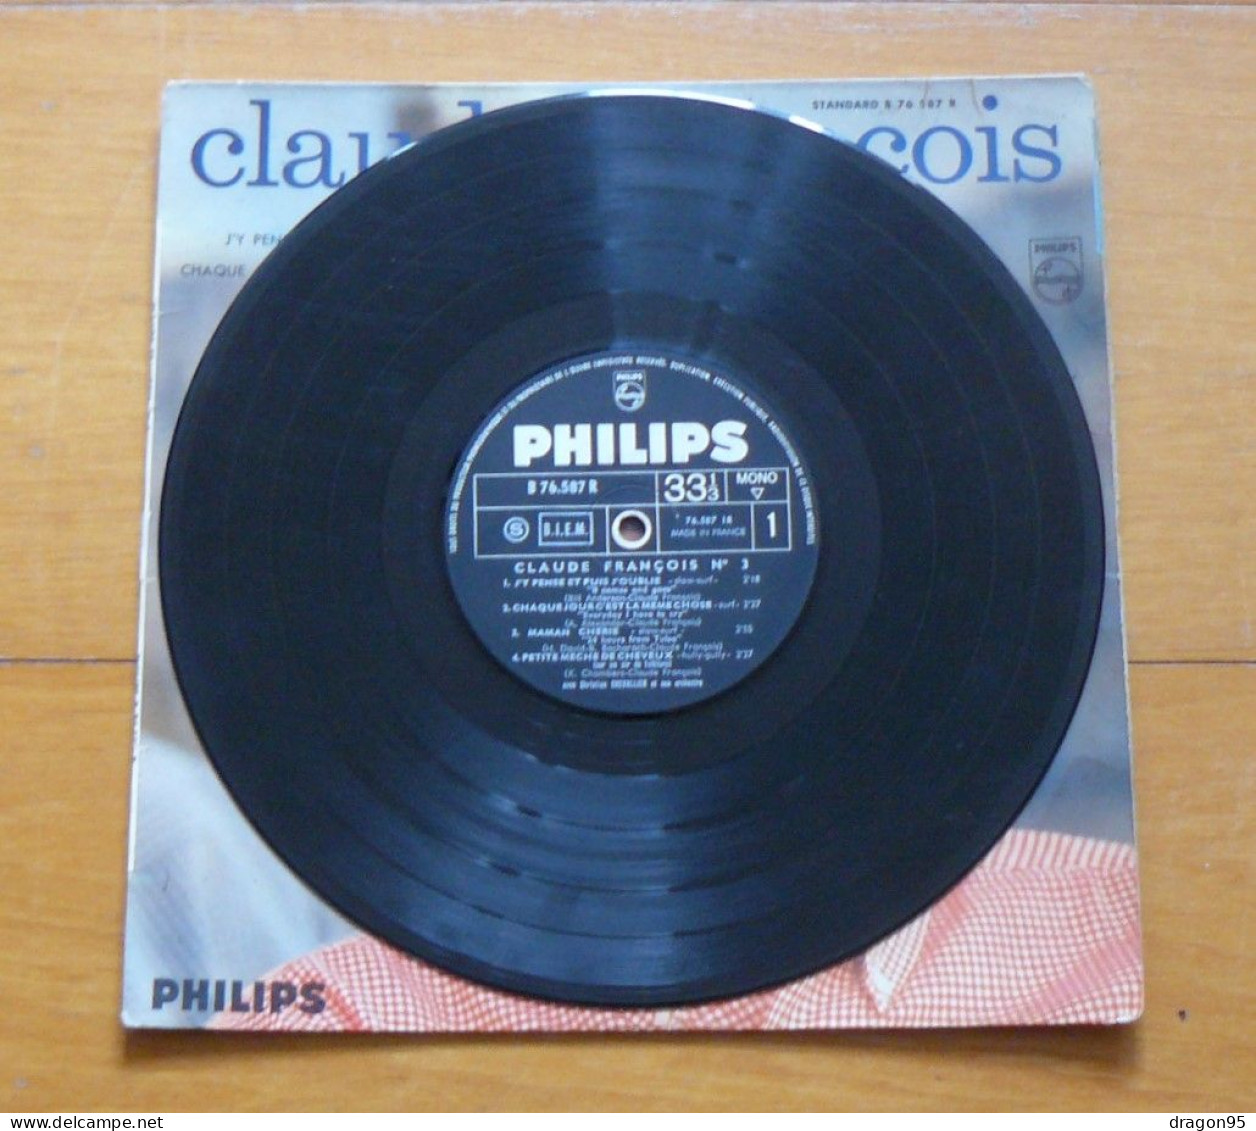 25 Cm Claude FRANCOIS : J'y Pense Et Puis J'oublie - Philips B 76.587 R - France - Otros - Canción Francesa